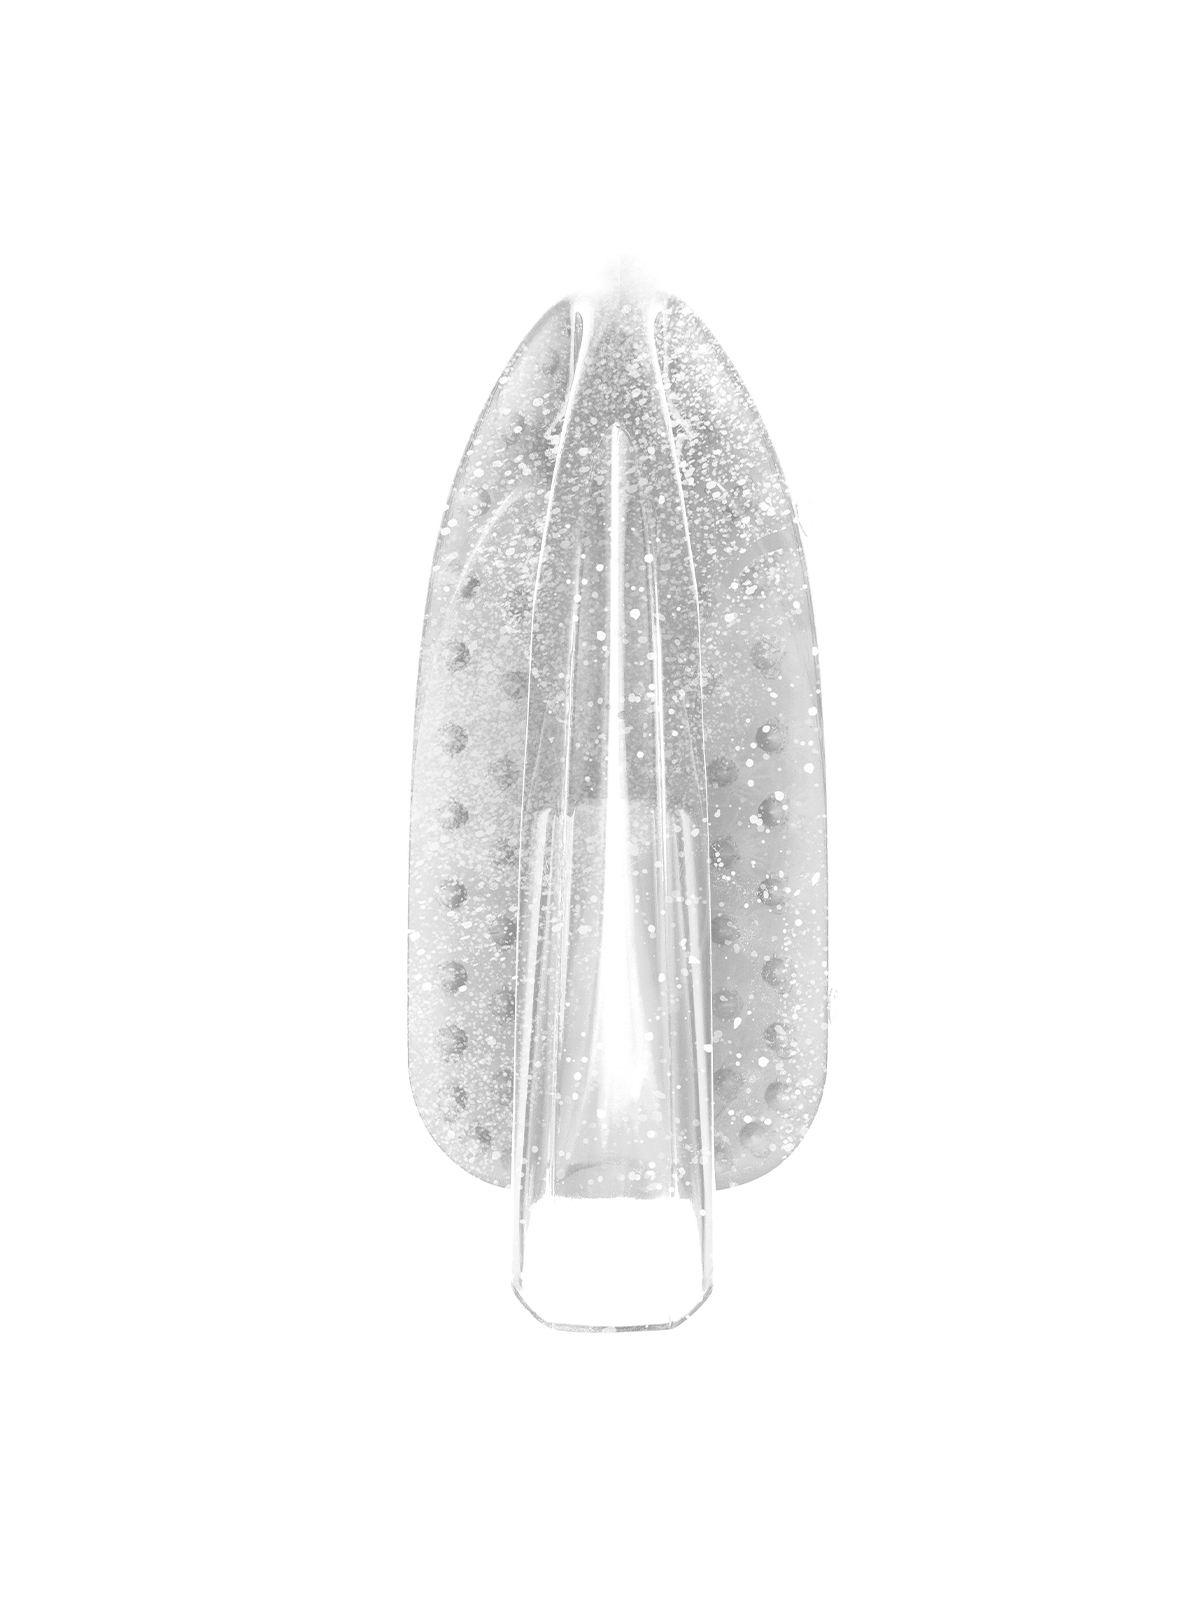 Щетка - утюжок Vogue 13,5 см кристально-прозрачный